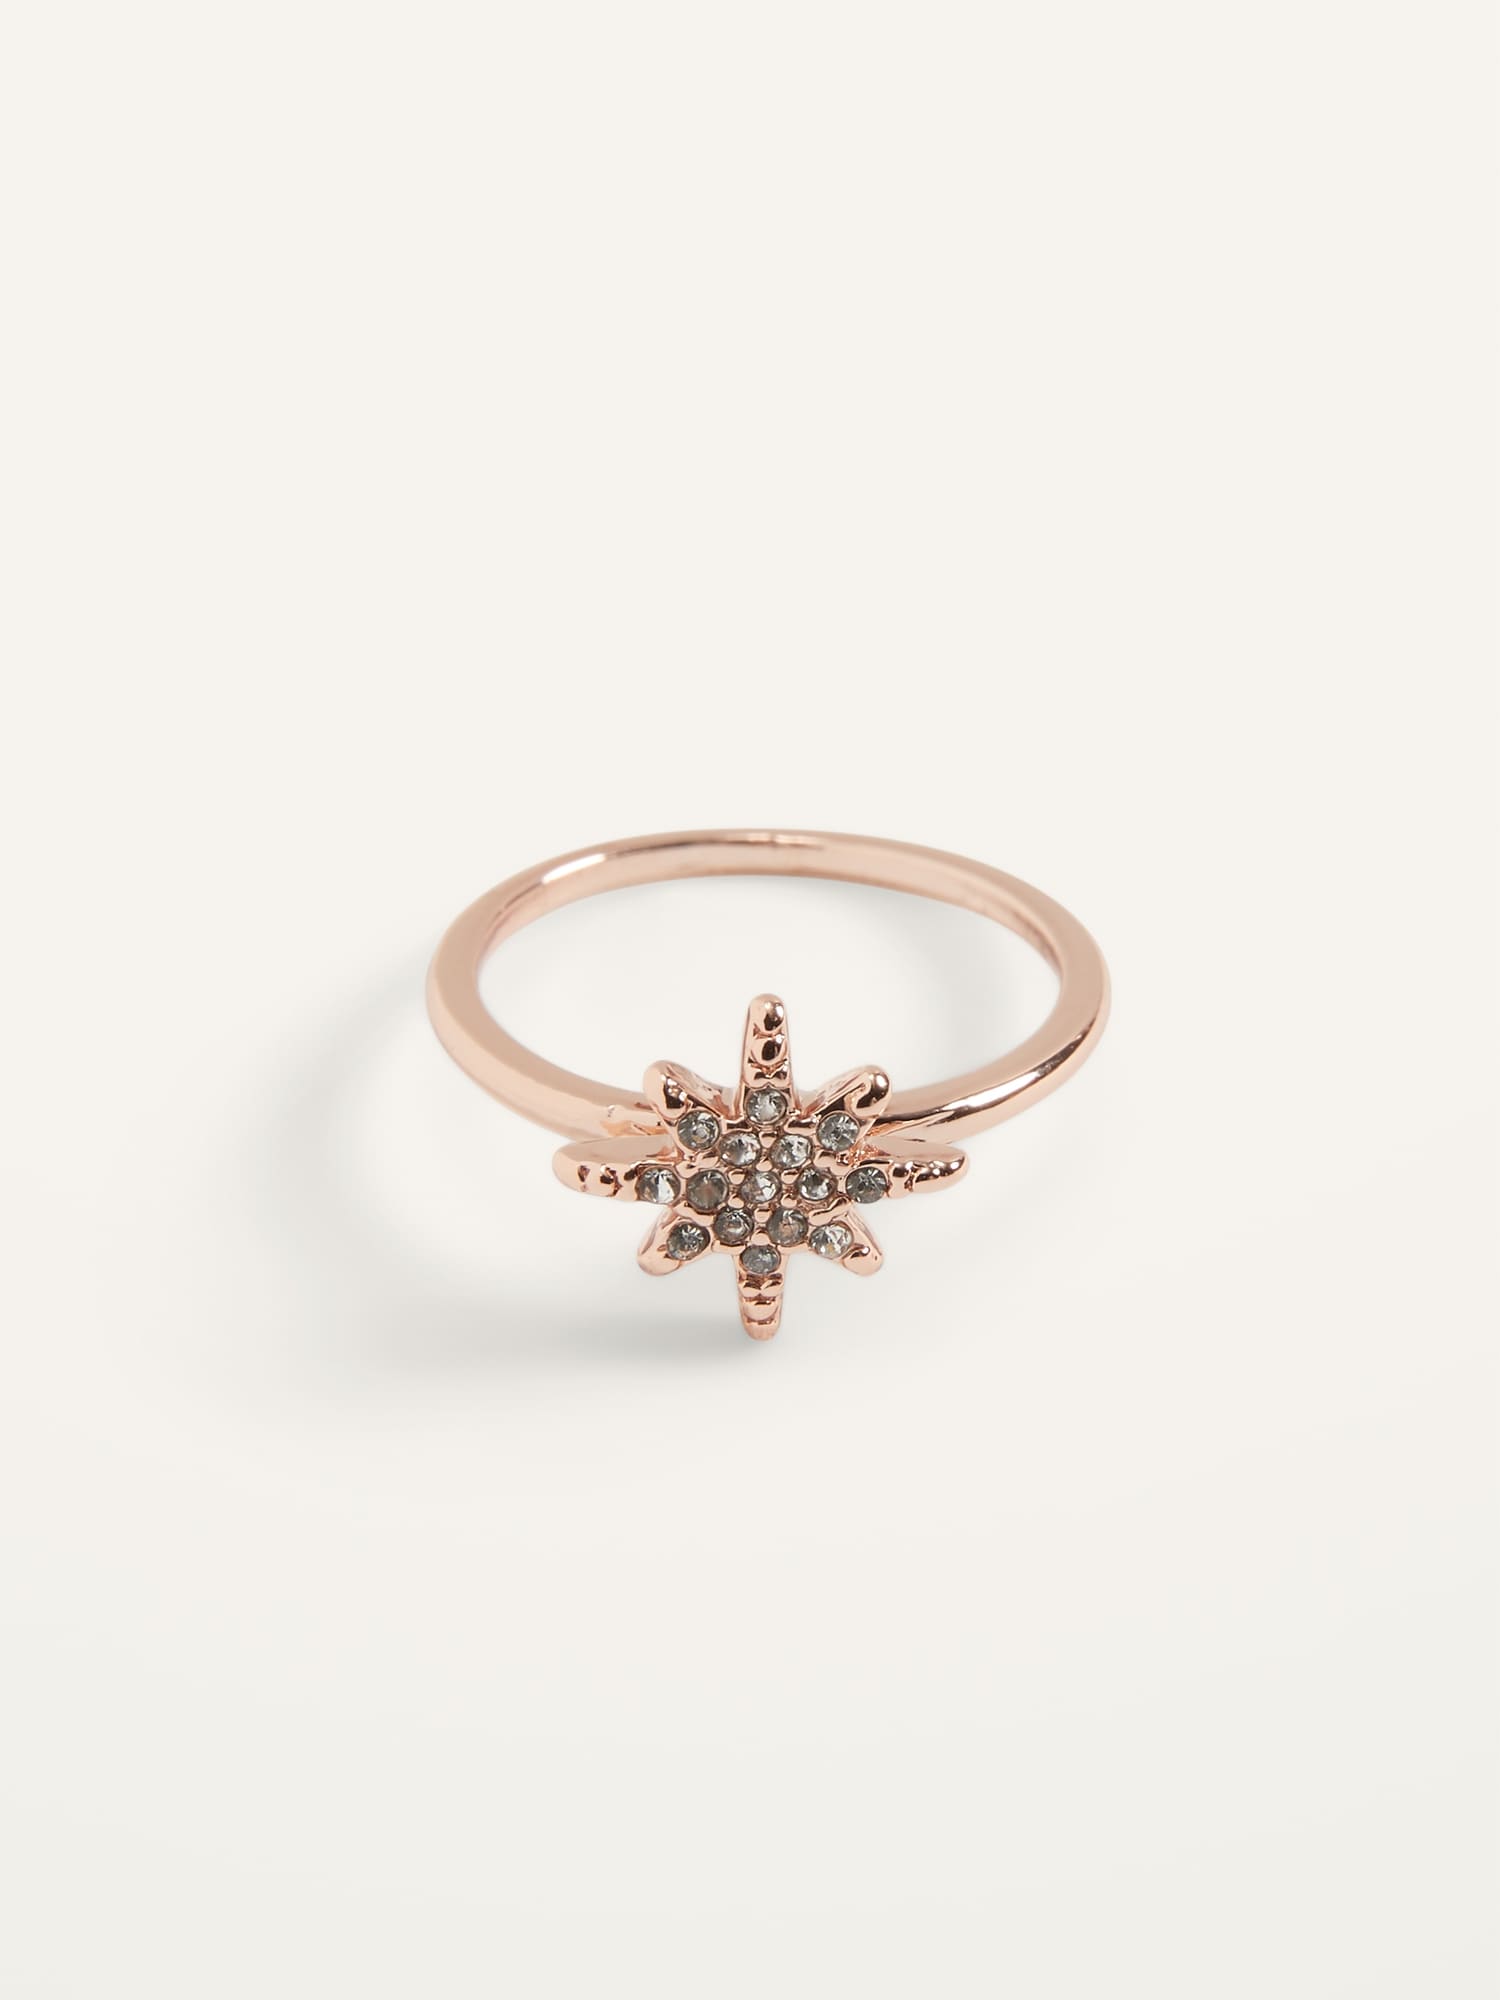 Rose-Gold Toned Pav� Polar Star Ring For Women